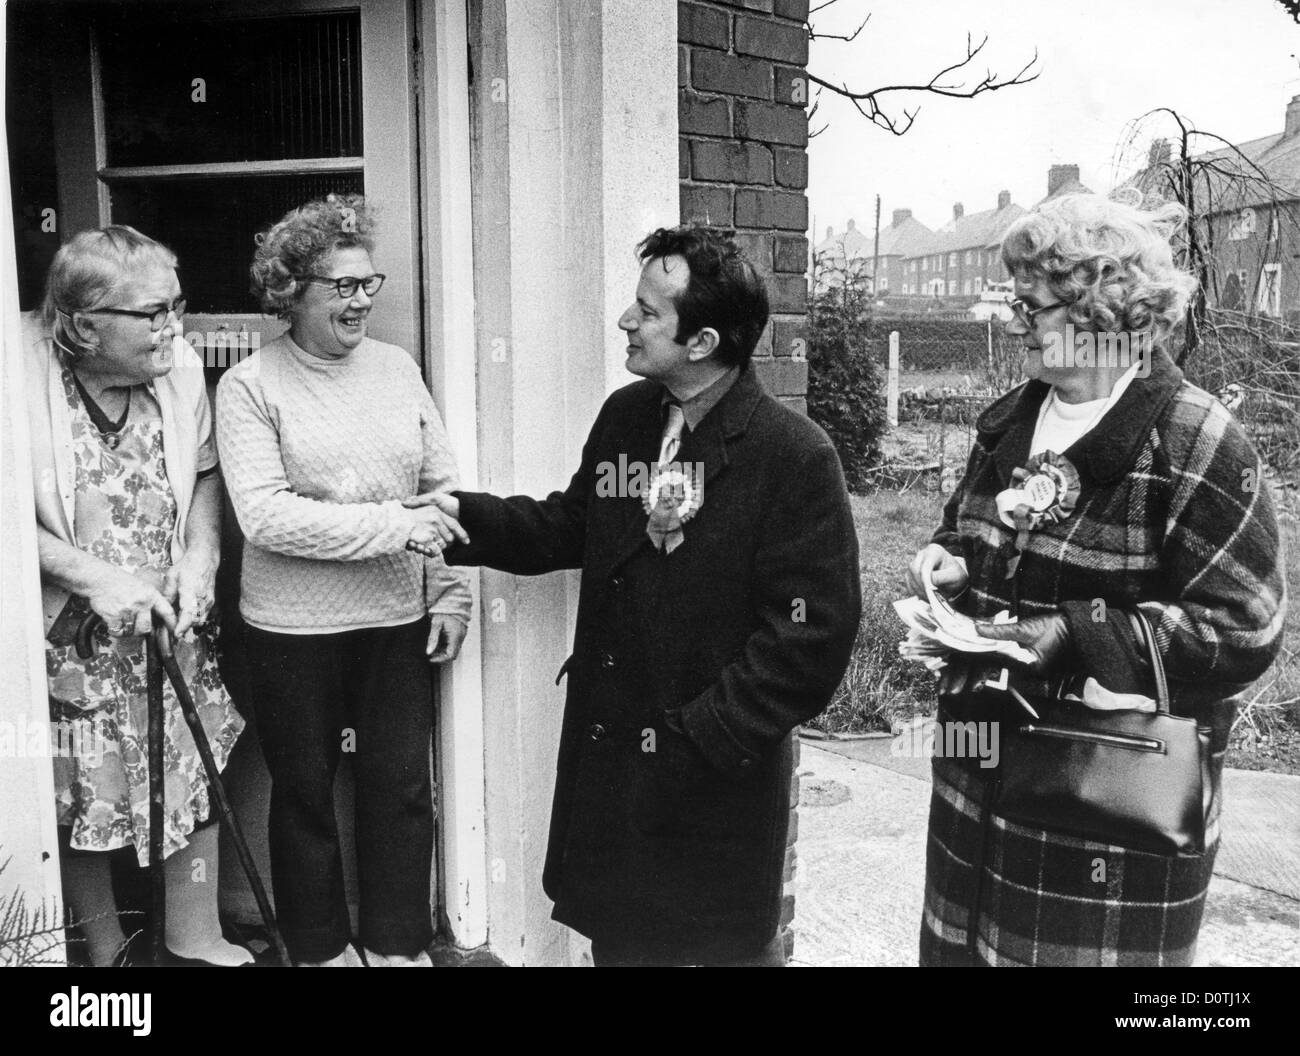 Le candidat du parti travailliste Gerry Fowler en campagne pour les élections de 1974 dans Donnington. Grande-Bretagne élections générales britanniques politique des années 1970 démocratie politique porte frappant les électeurs de la classe ouvrière. Photo de DAVID BAGNALL Banque D'Images